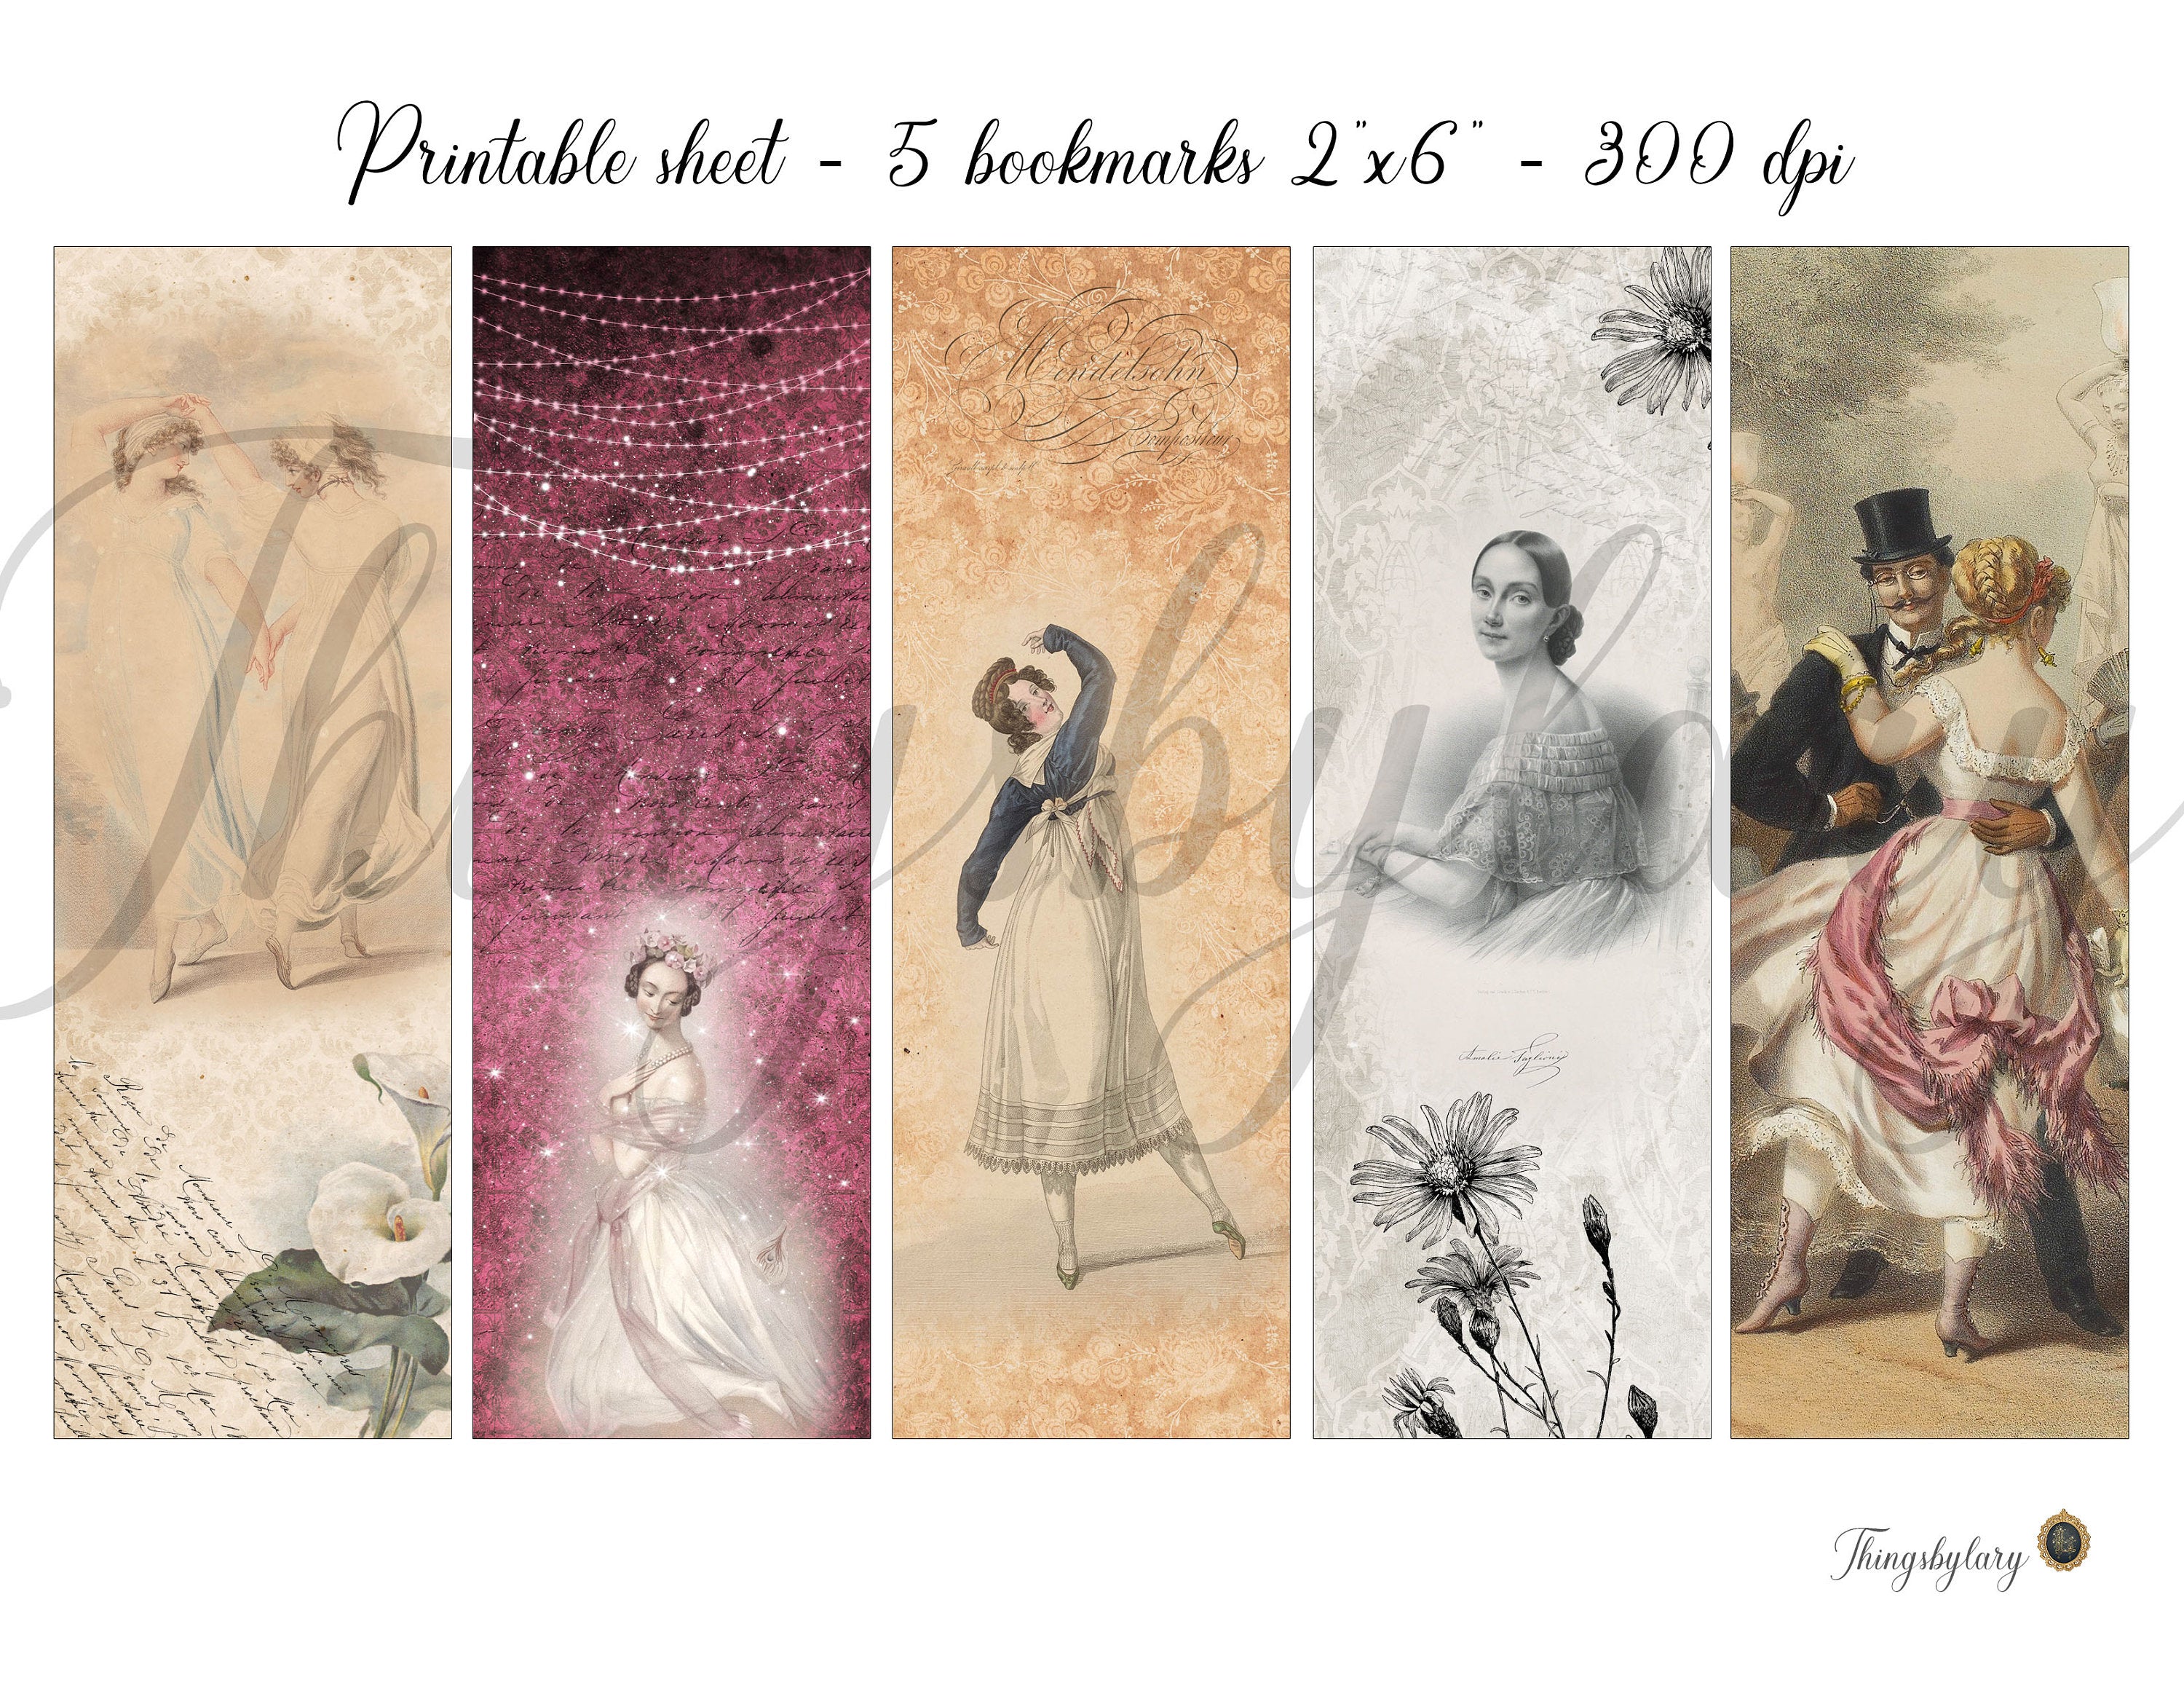 15 Vintage Ballerina Ephemera Bookmarks Printable sheet Digital Images 300 Dpi JPG Instant Download Commercial Use Antique Victorian Dancing